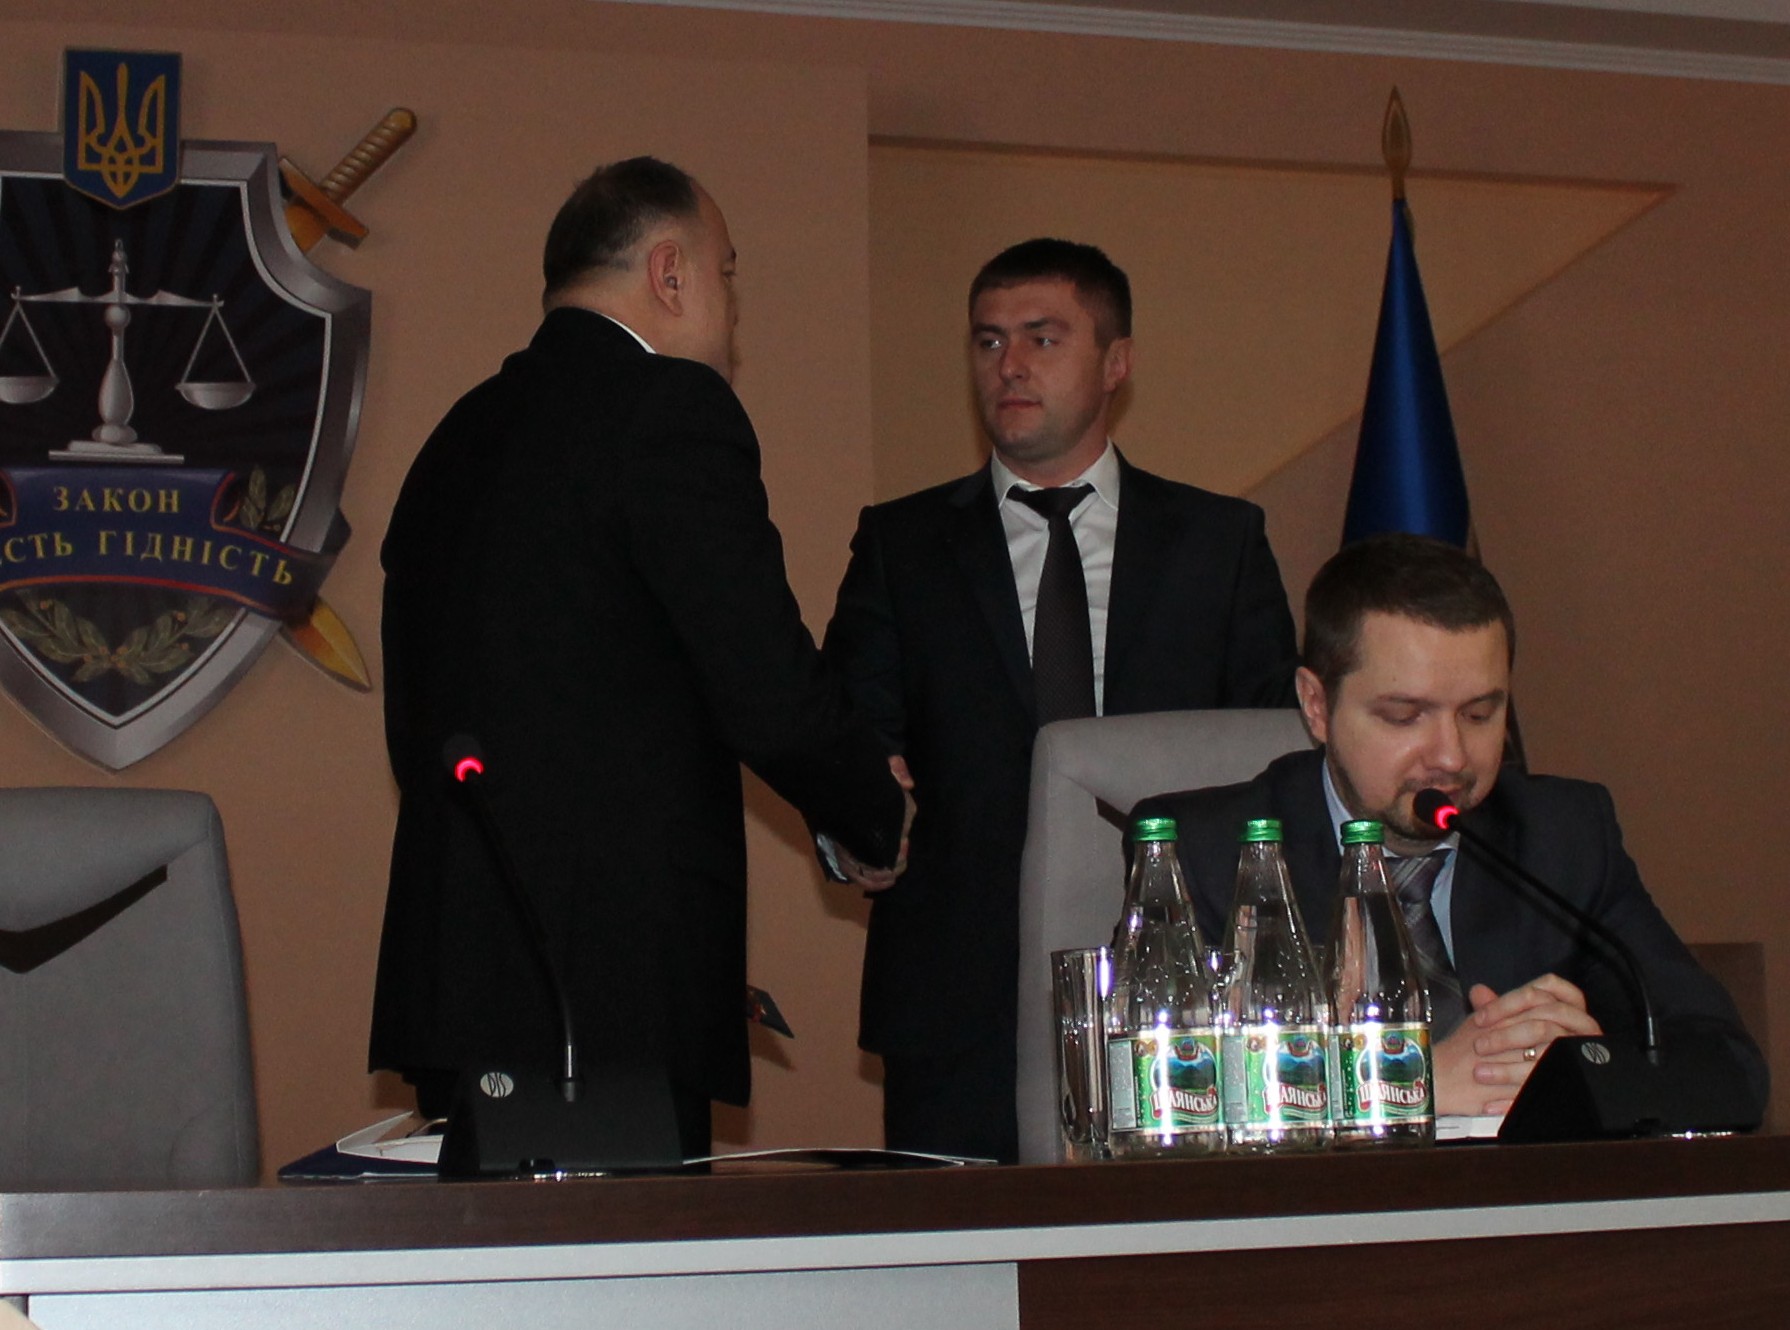 Нового заступника прокурора представили сьогодні, 26 січня, і в прокуратурі Закарпатської області. Ним став Іван Шимон.